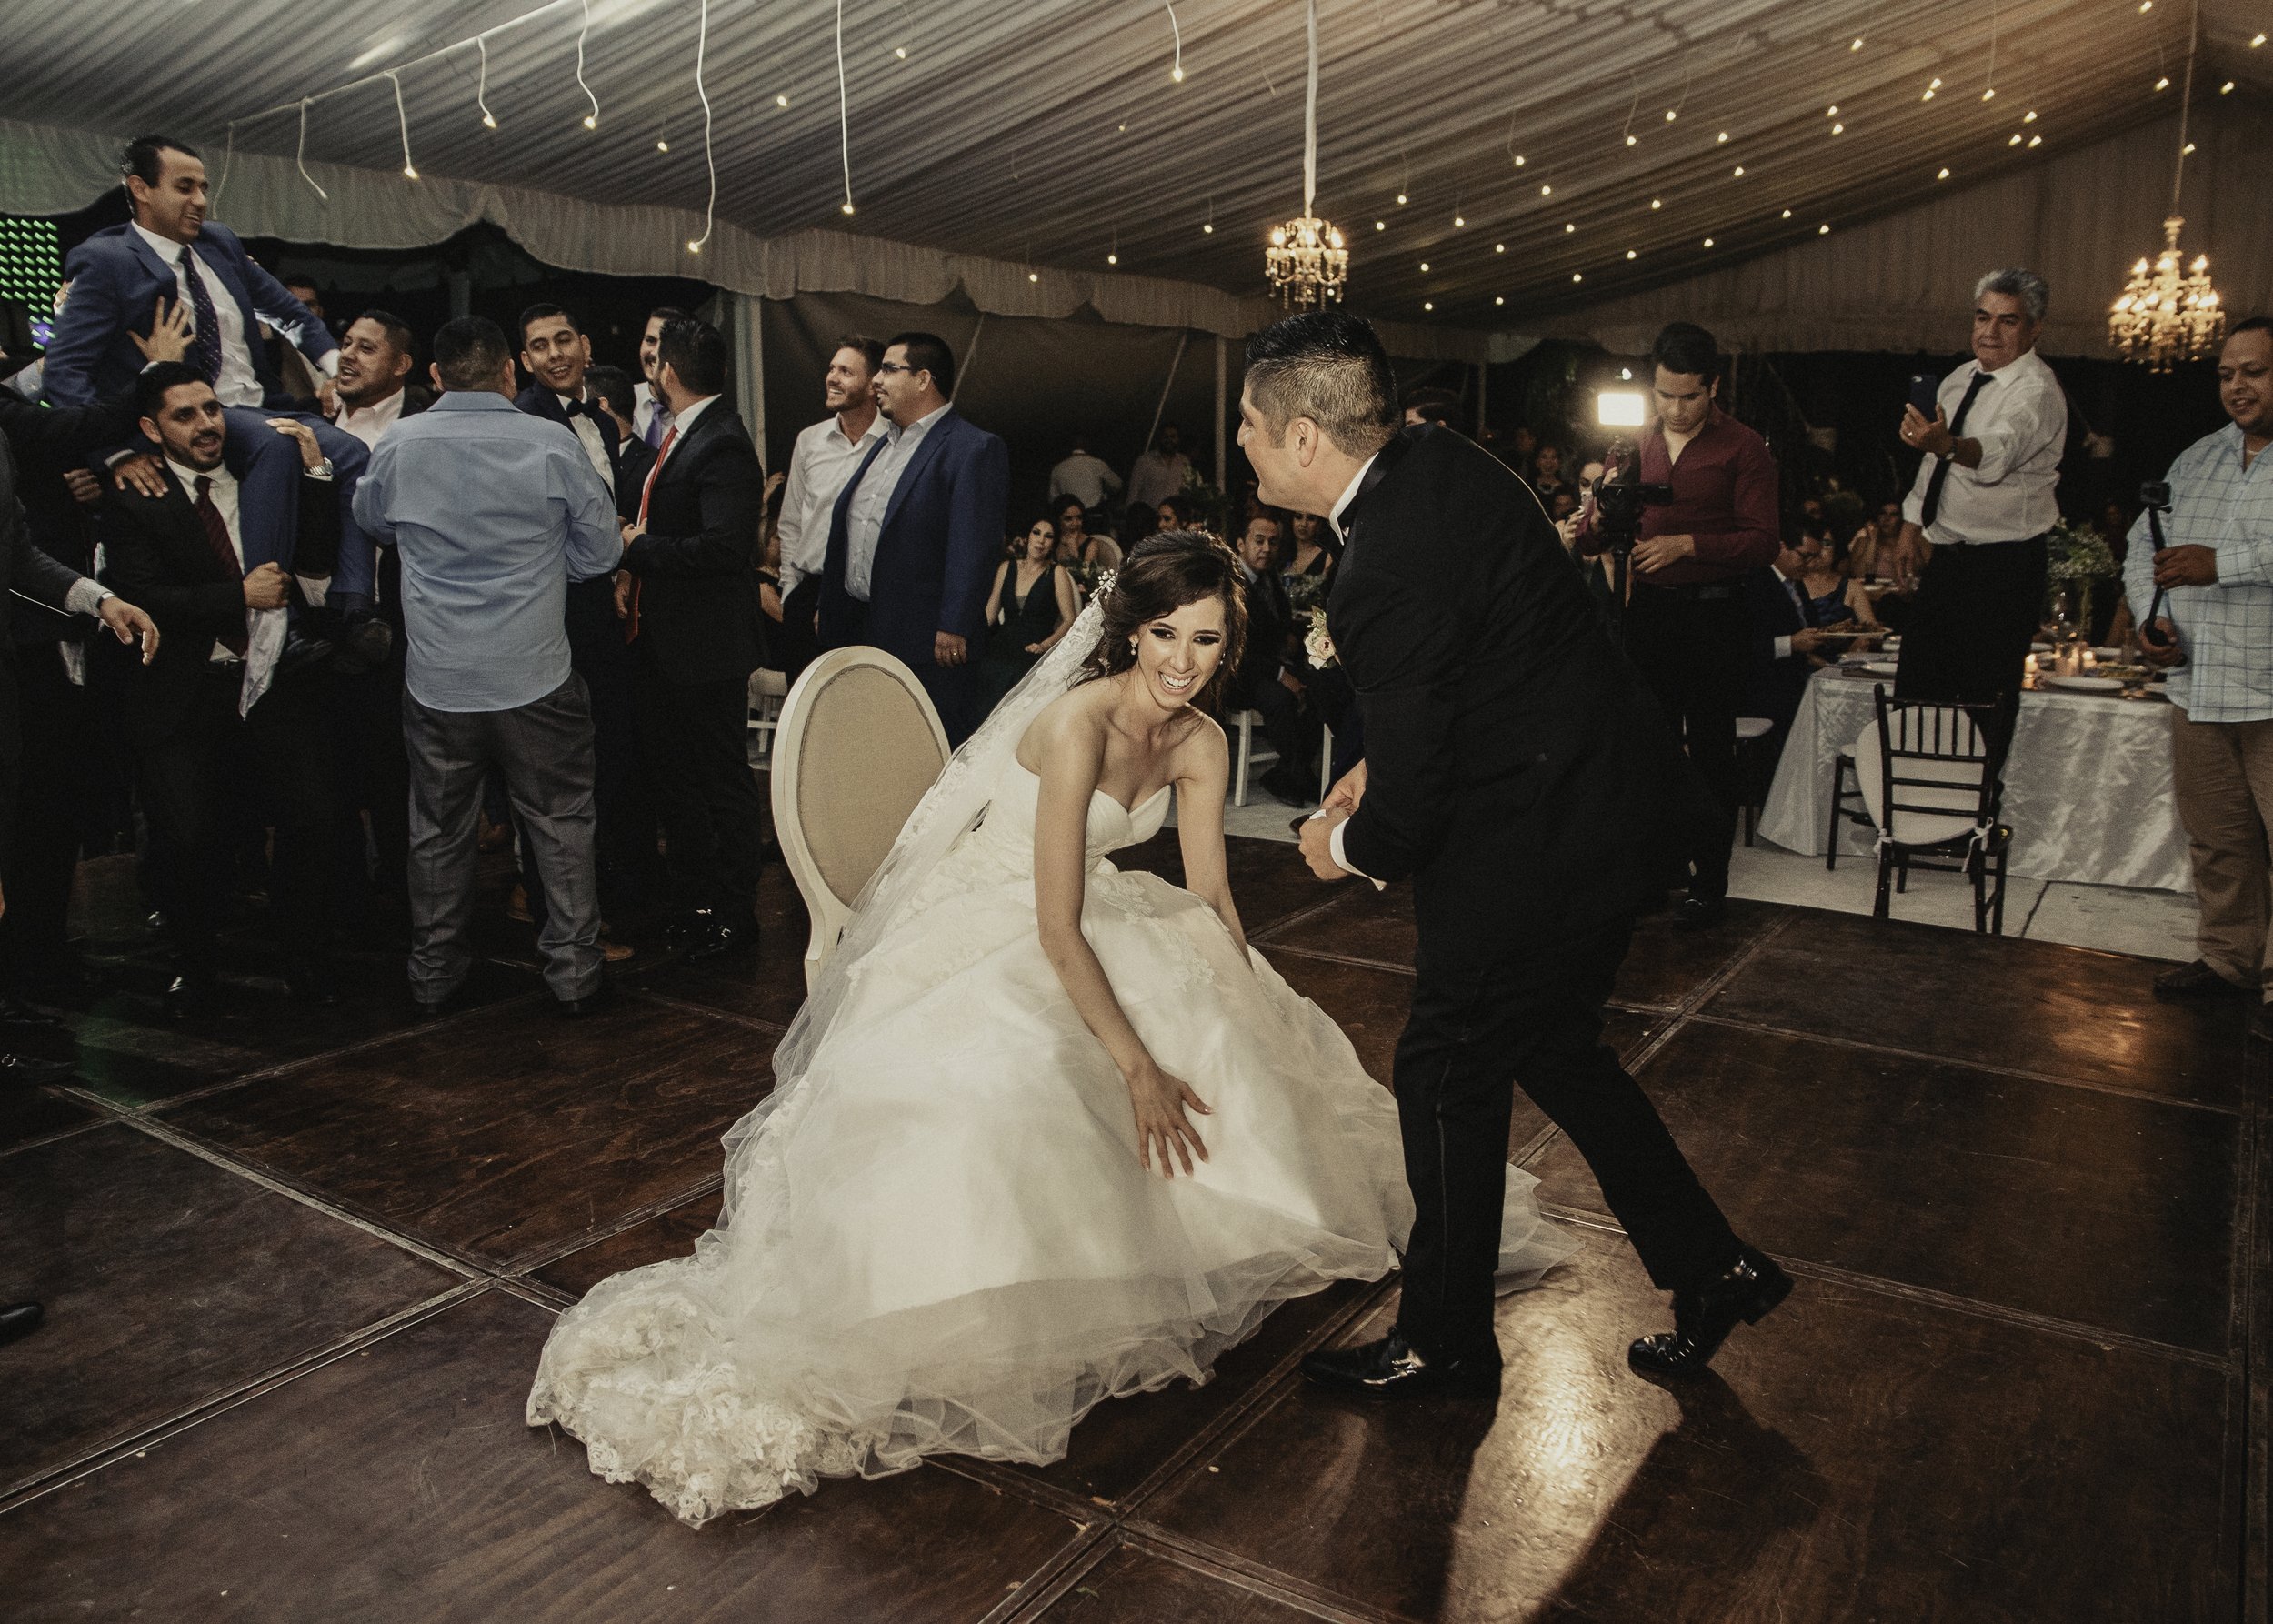 Fotografo-de-bodas-destino-Mexico-wedding-destination-photographer-san-miguel-de-allende-guanajuato-queretaro-boho-bohemian-bohemio-chic-editorial-carotida-photographer-lago-michoacan-los-cabos